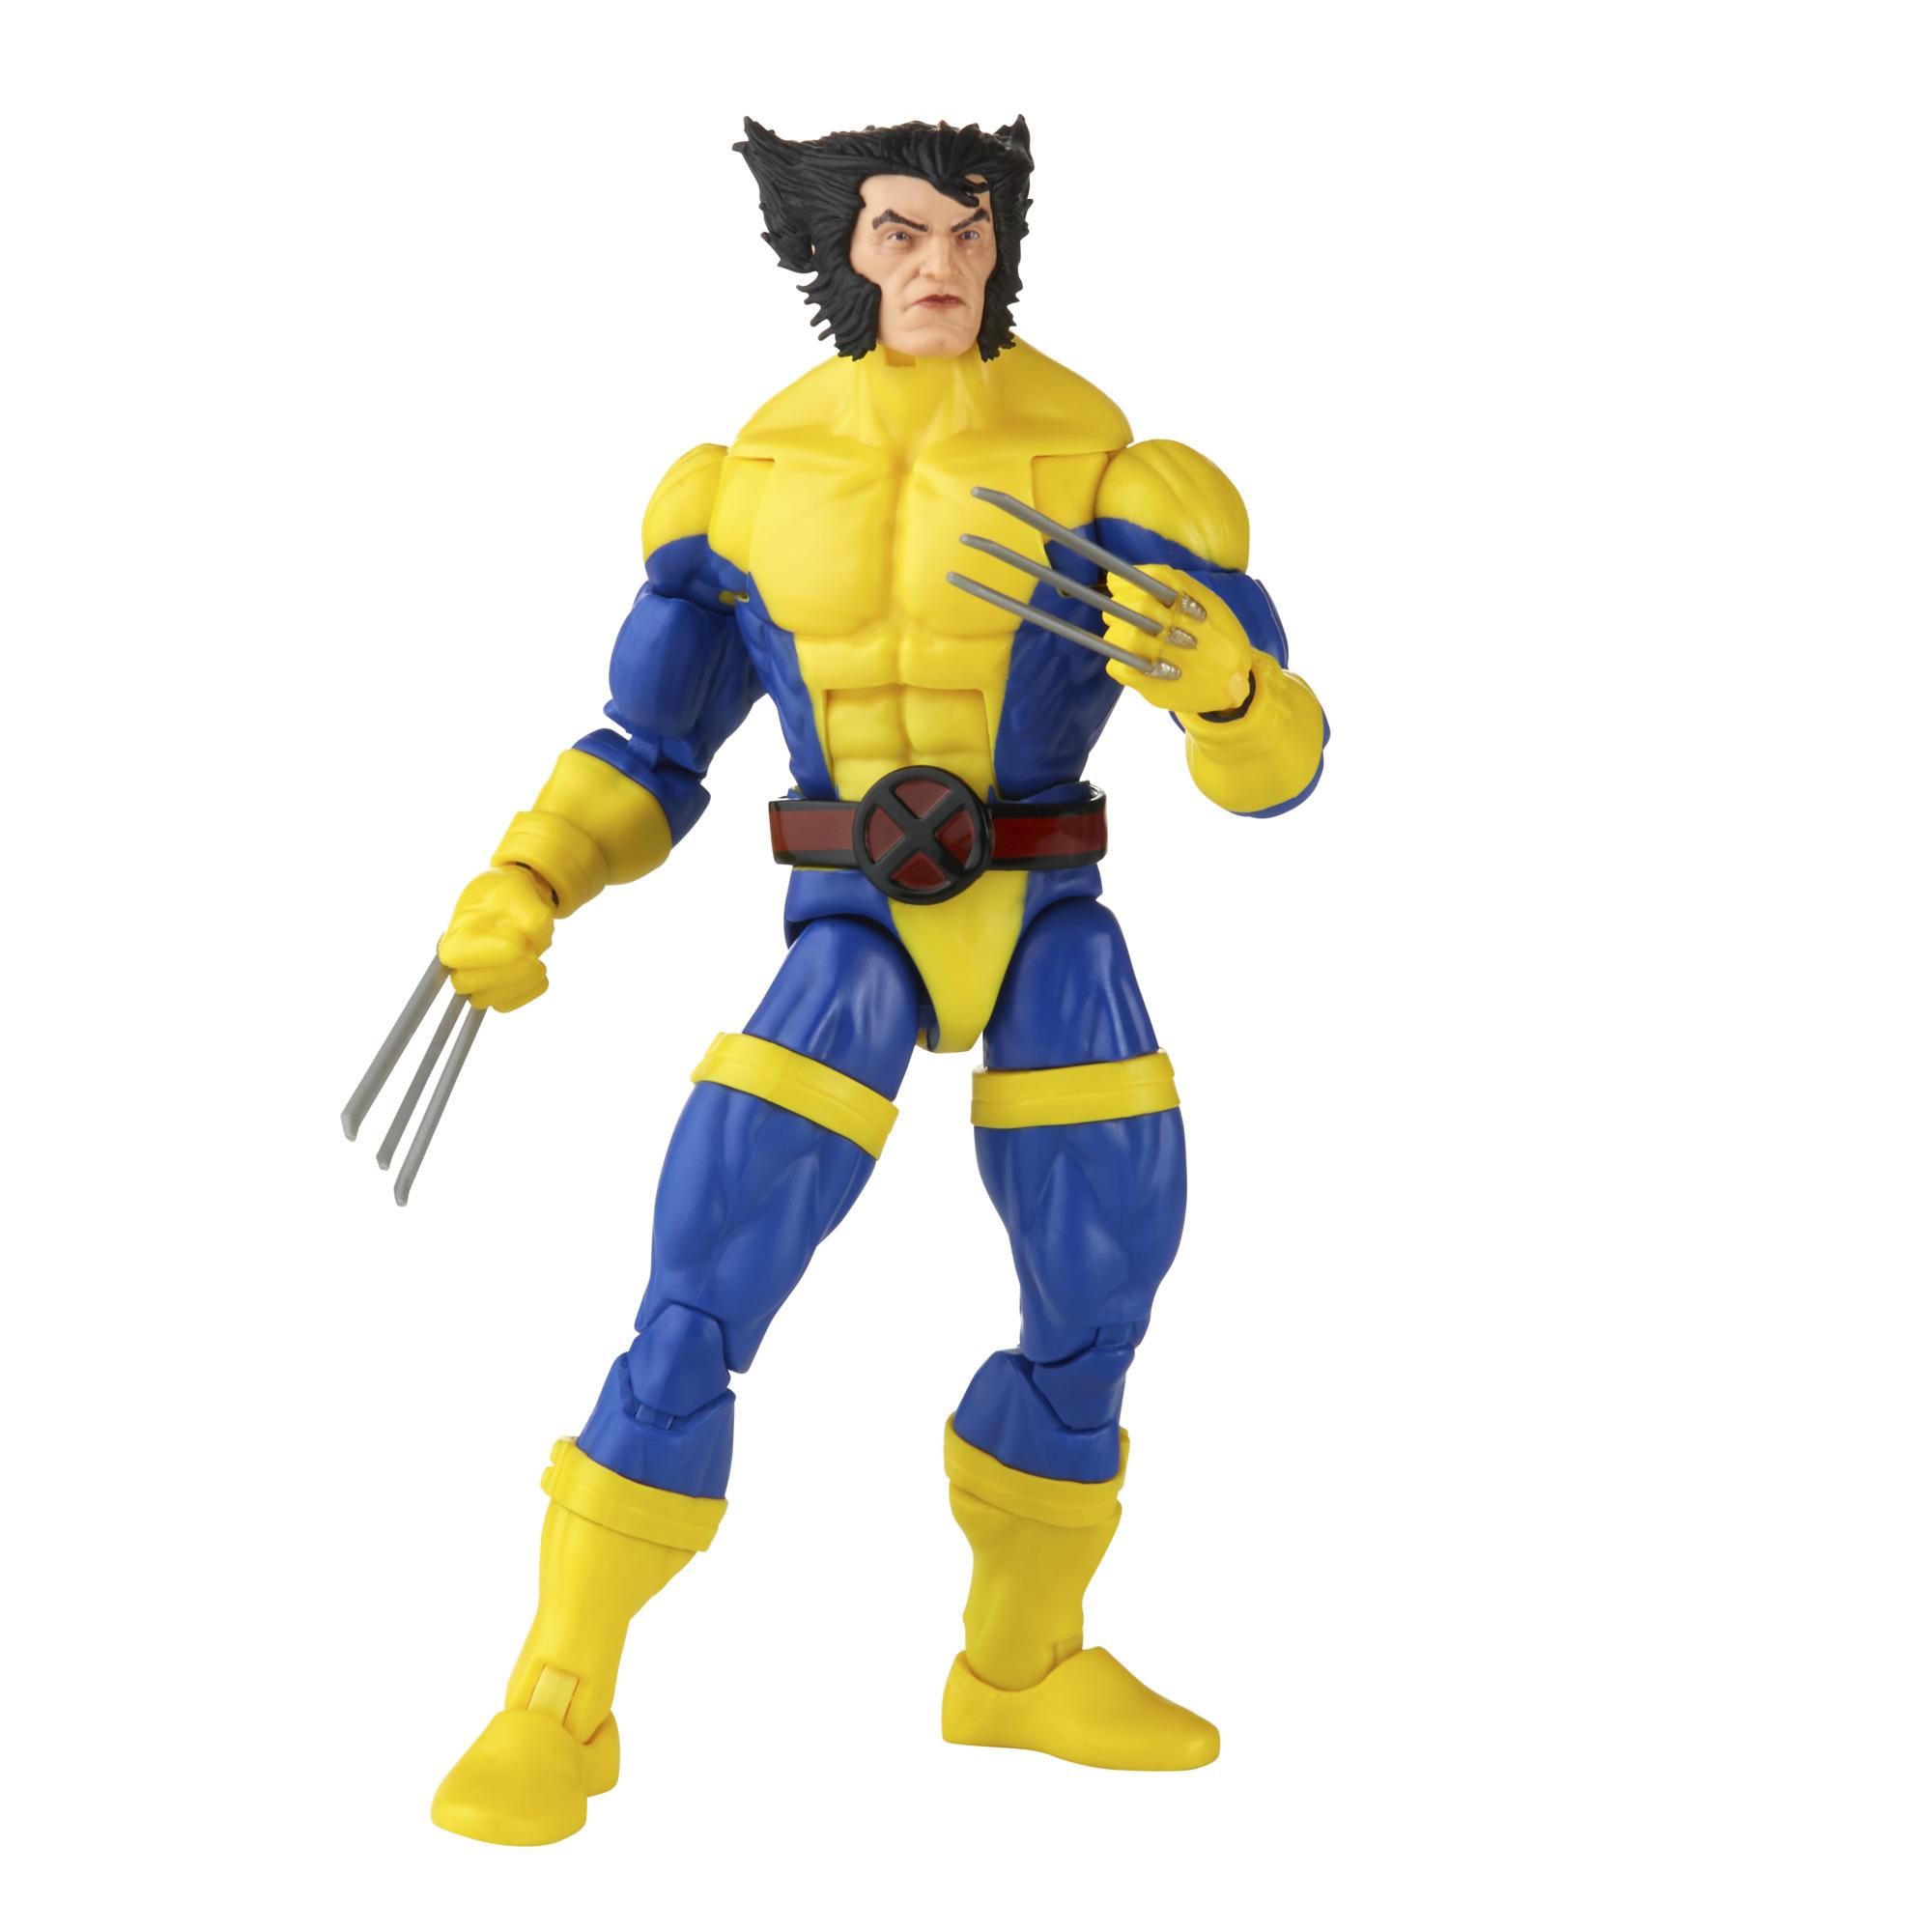 Marvel Legends Vintage 6 Inch Action Figure - Wolverine